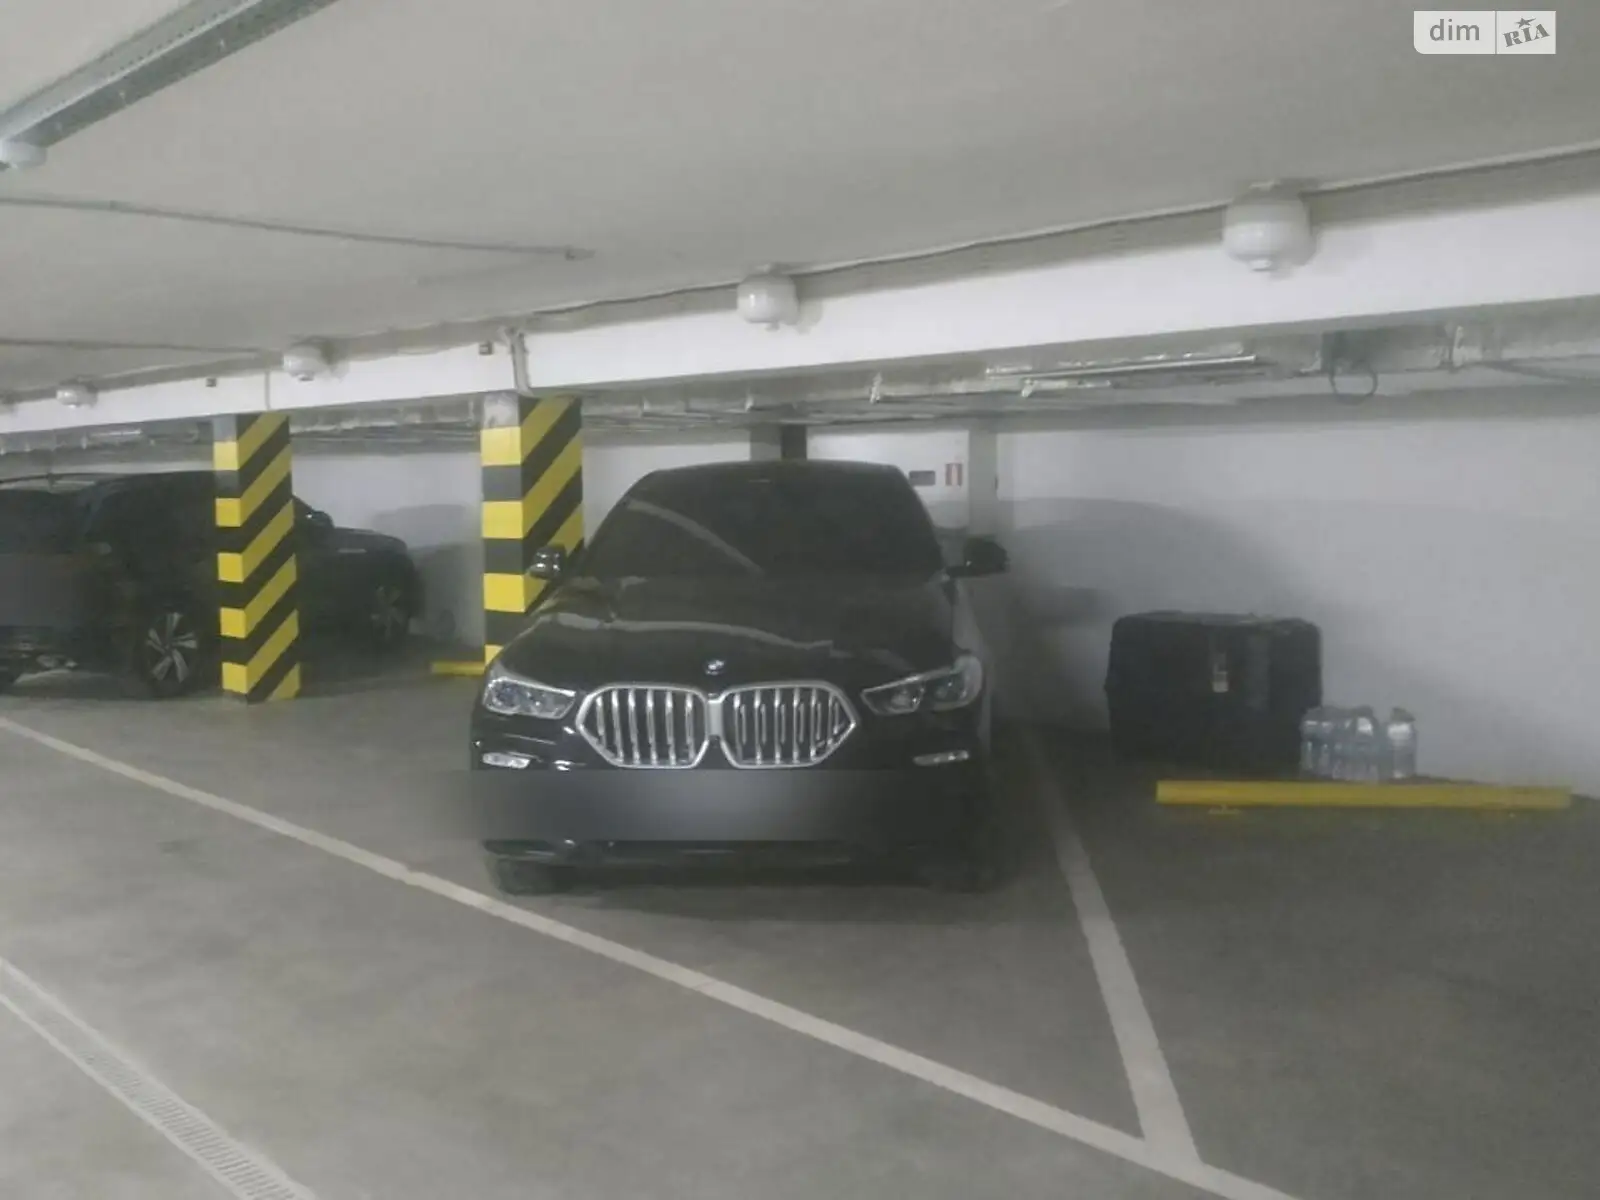 Продается подземный паркинг под легковое авто на 16 кв. м, цена: 30000 $ - фото 1